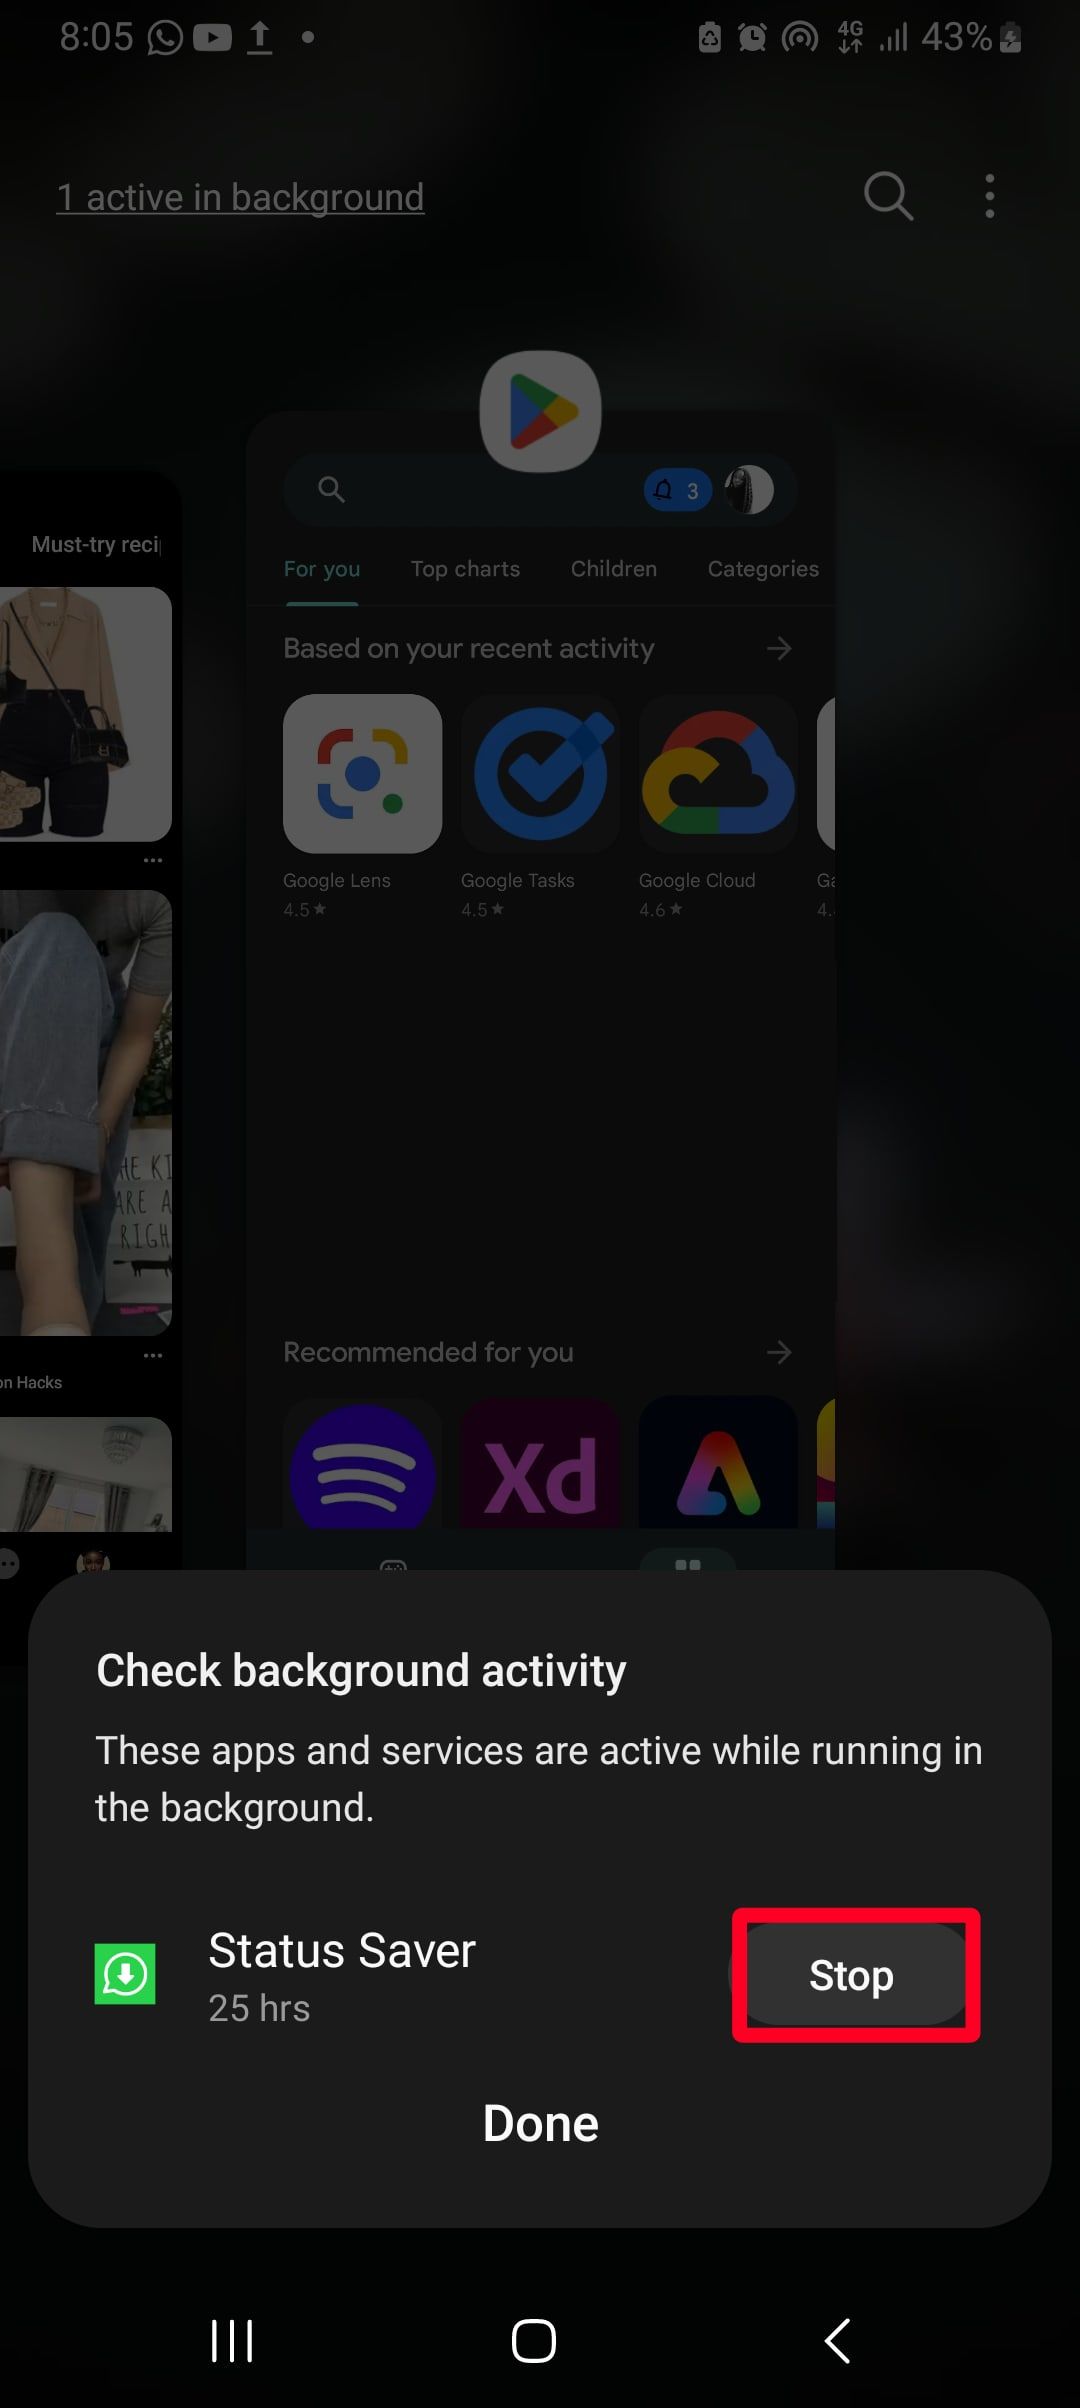 contorno de retângulo vermelho destacando a opção de parada para verificar a atividade em segundo plano no menu Visão geral do aplicativo no smartphone Android